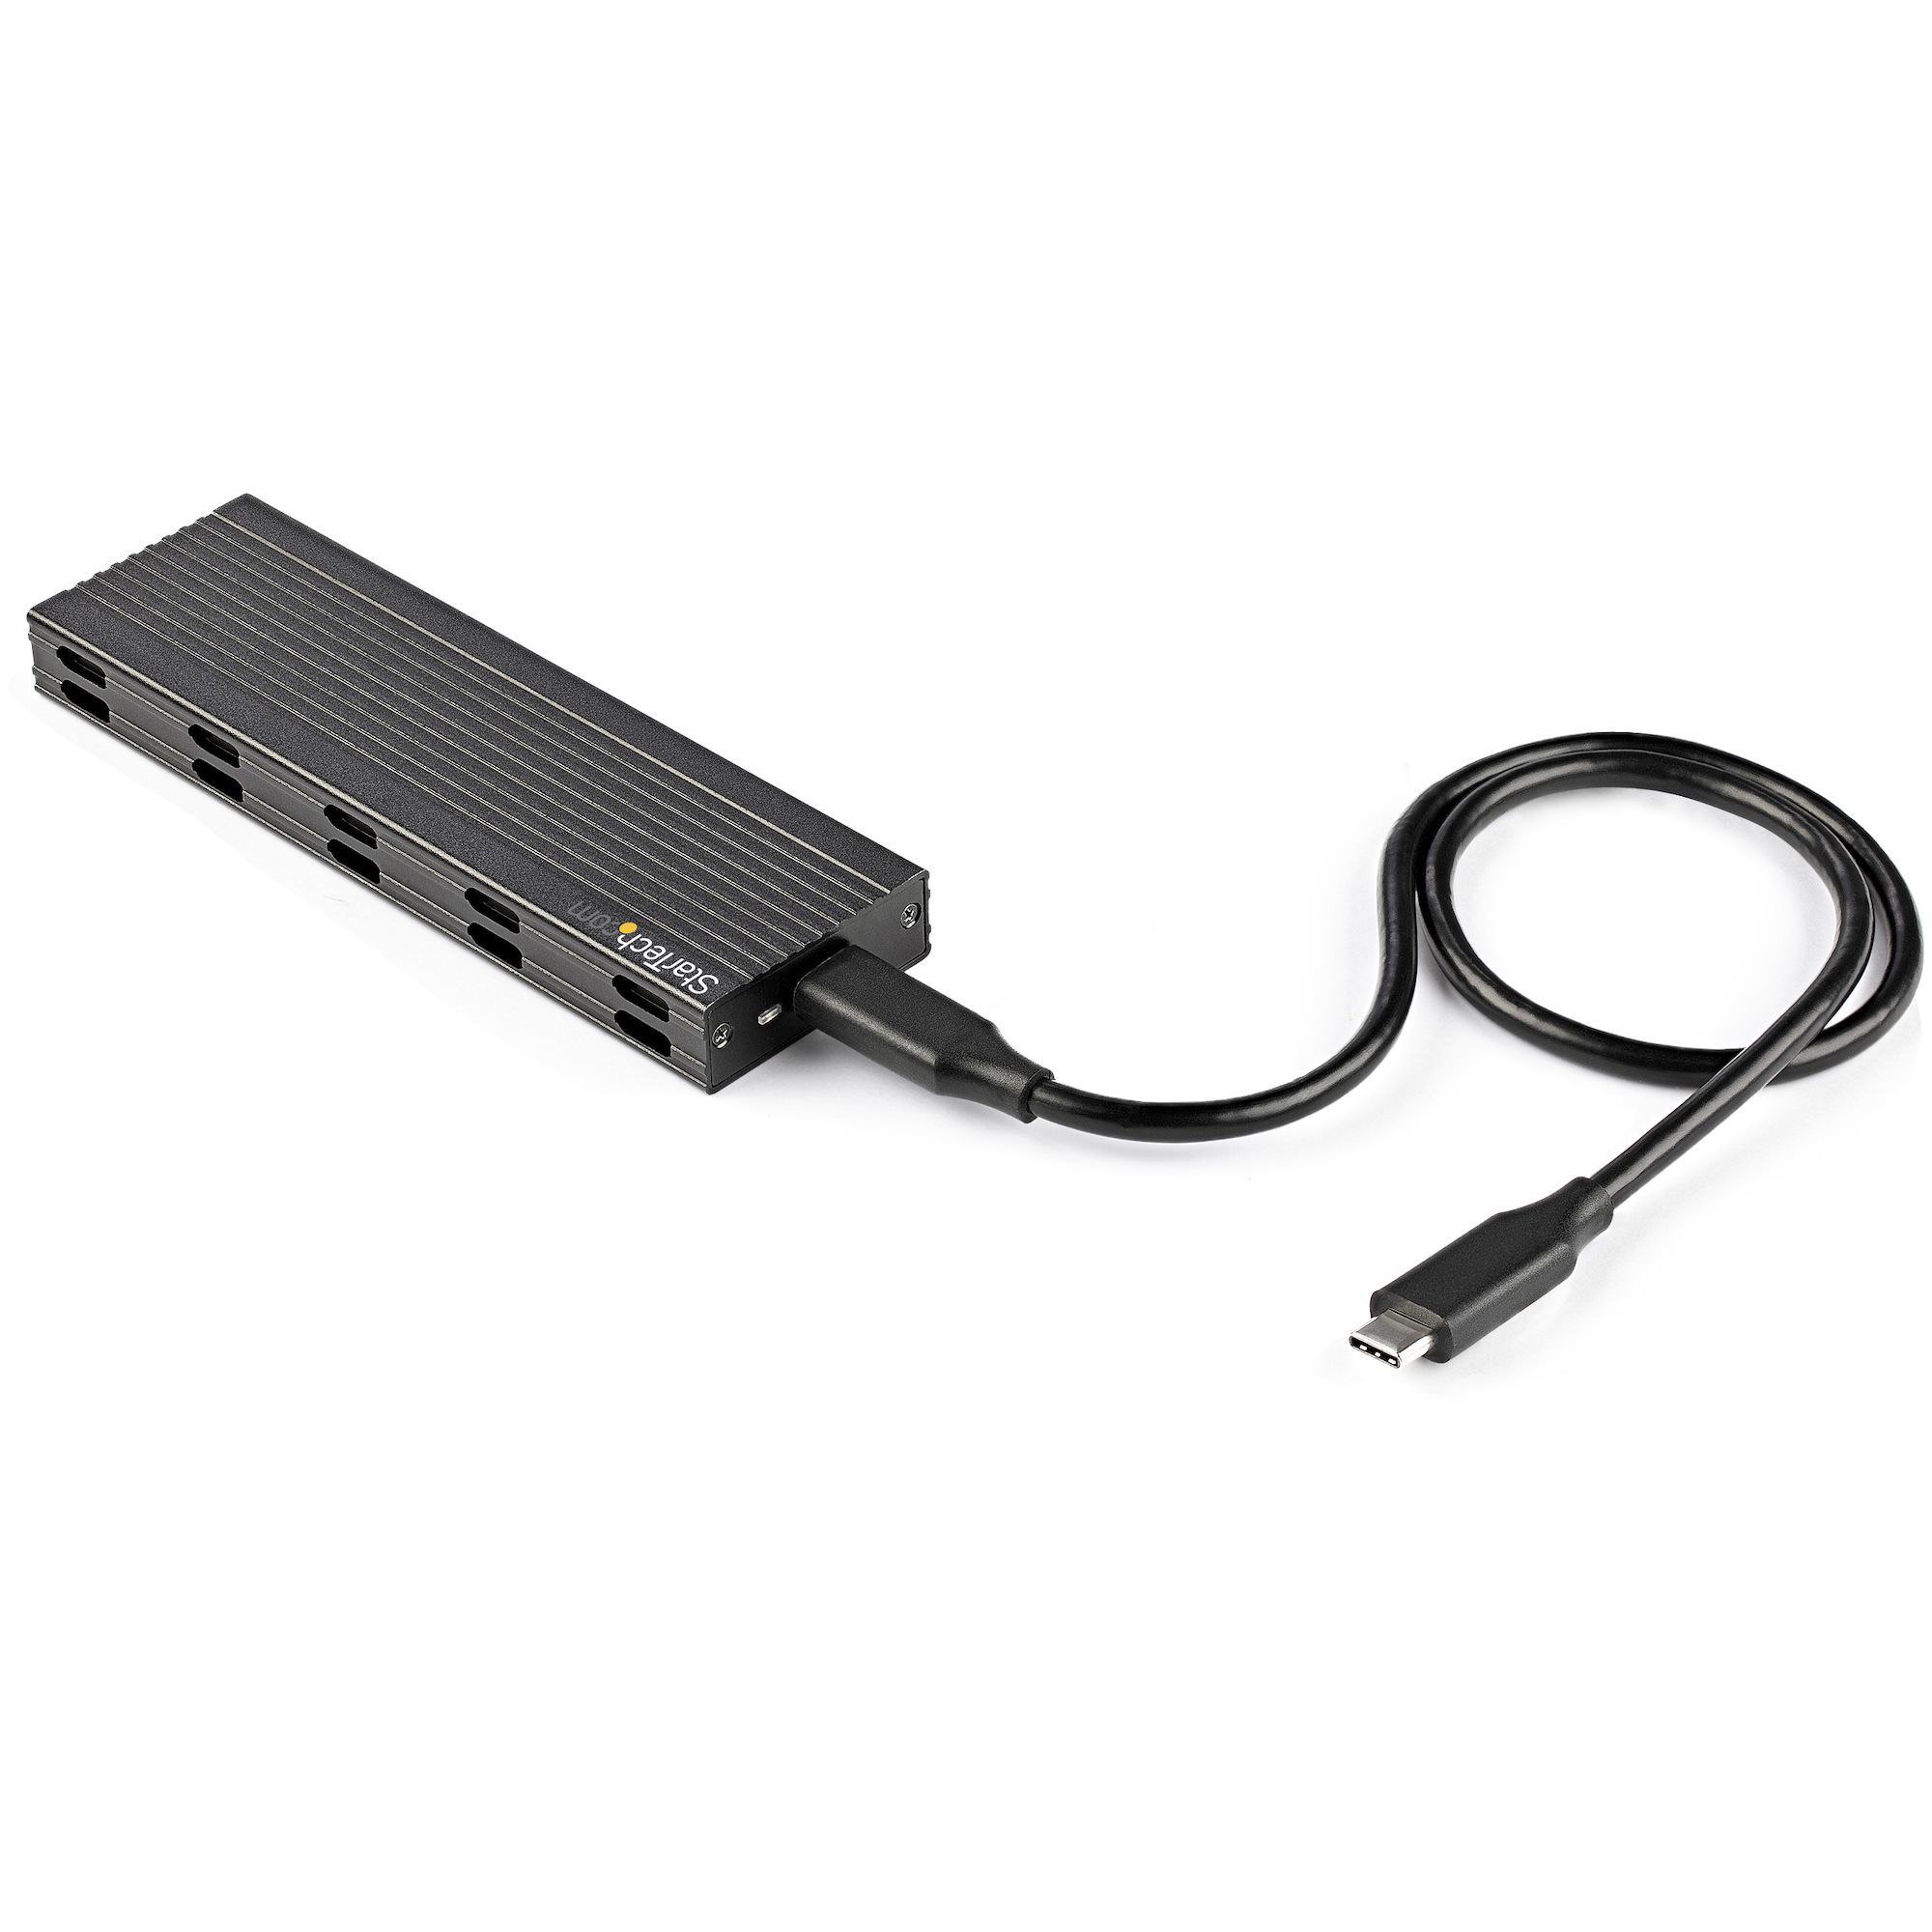 StarTech.com USB-C 10 Gbps till M.2 NVMe eller M.2 SATA SSD-inneslutning - Portabel extern M.2 PCIe/SATA NGFF SSD-inneslutning i aluminium - USB Type-C och USB-A värdkablar - Stöder 2230/2242/2260/2280